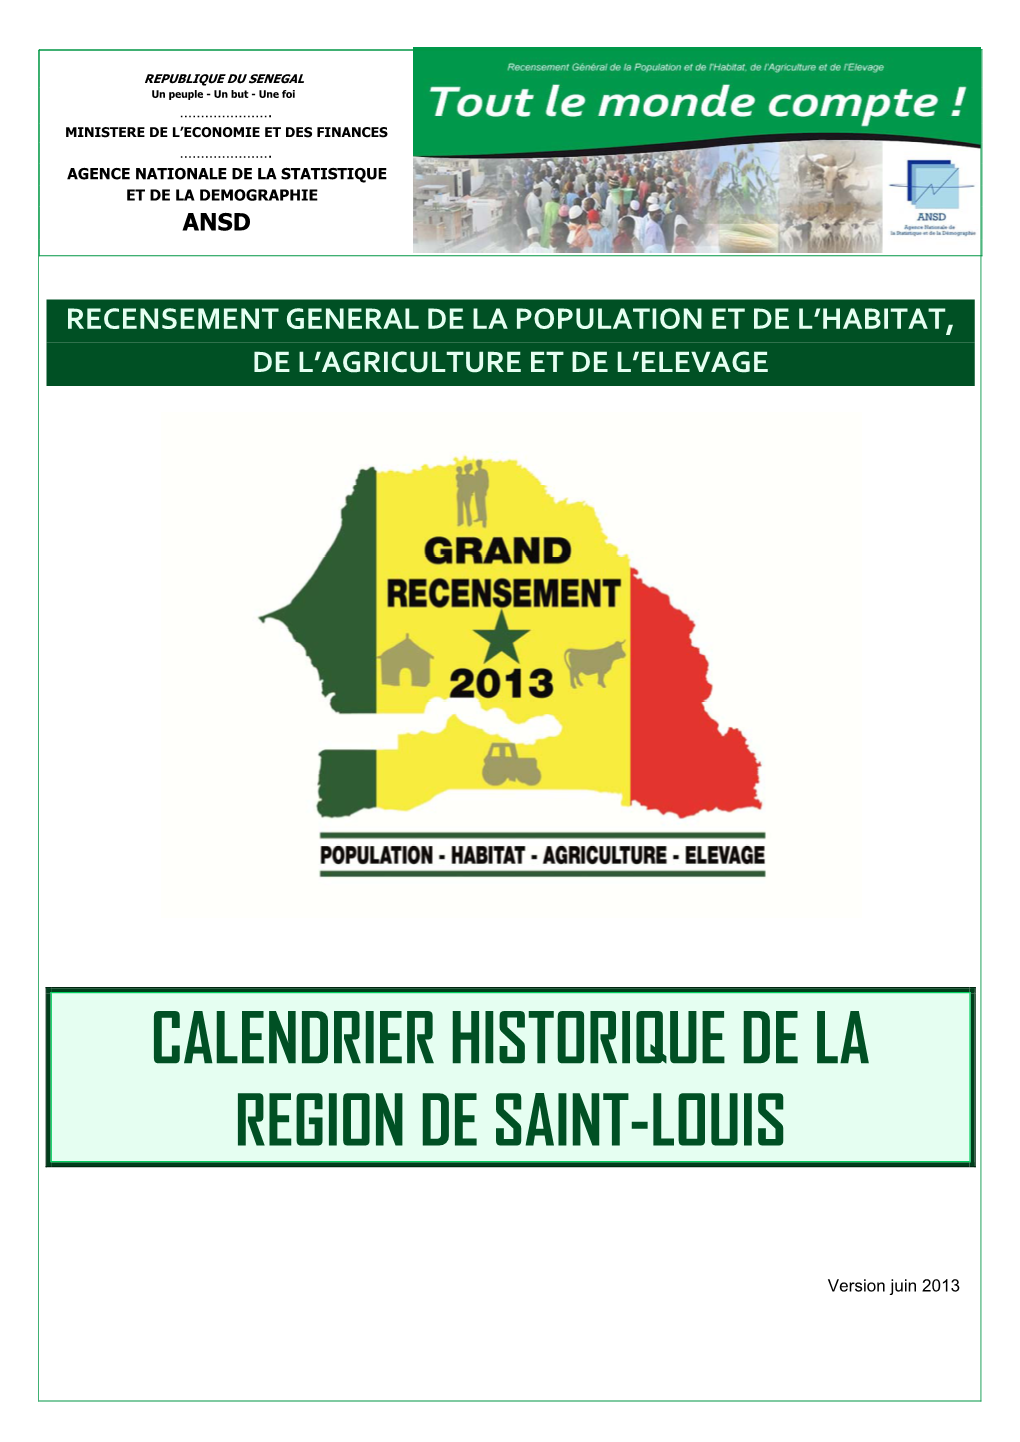 Calendrier Historique De La Region De Saint-Louis